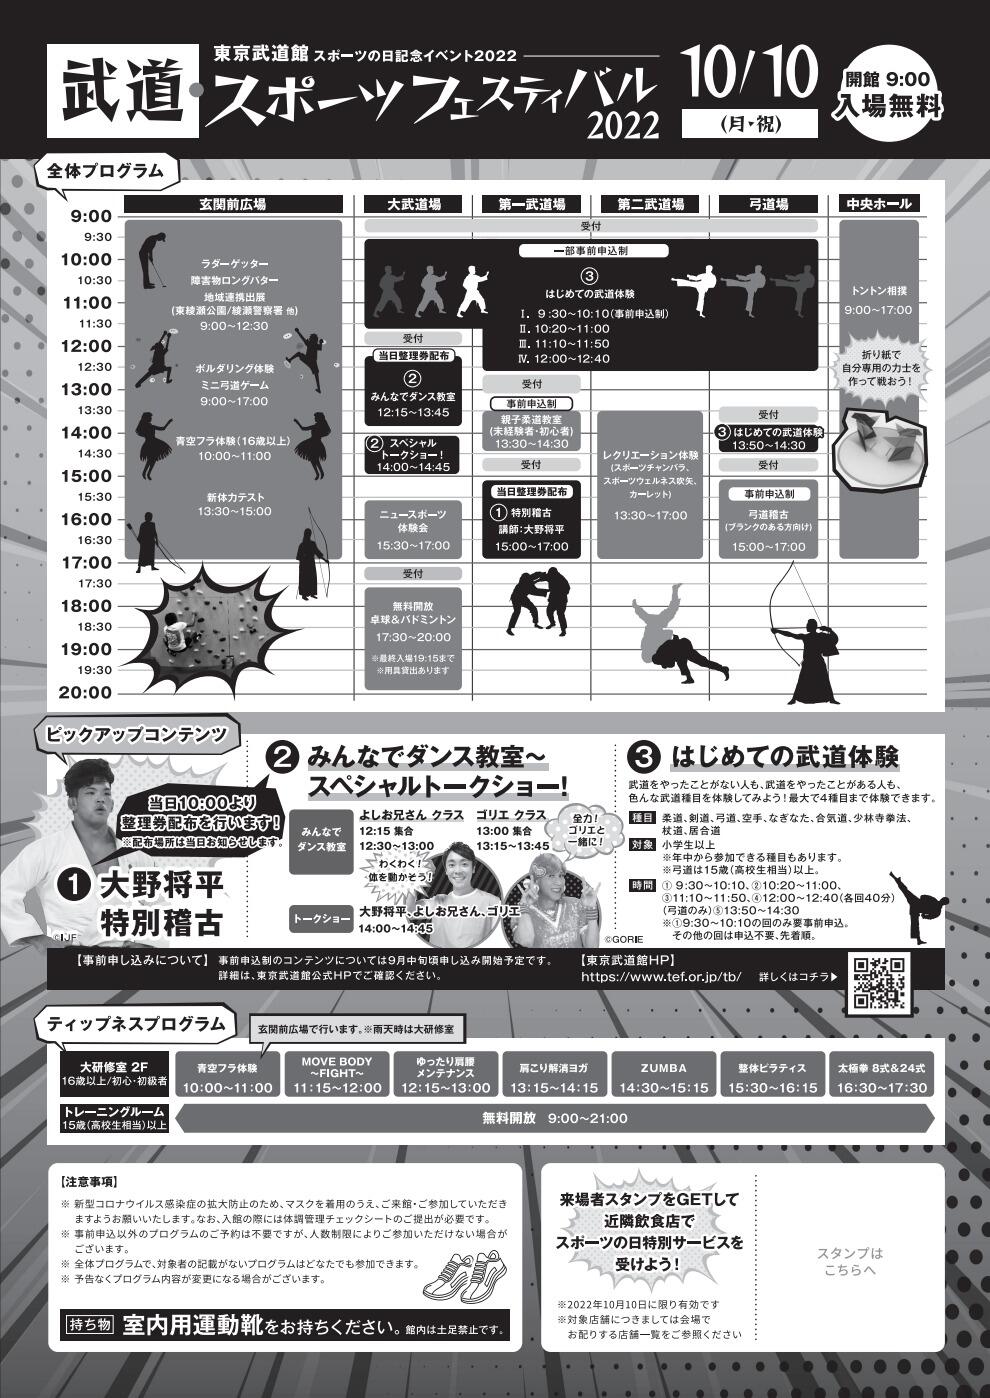 武道・スポーツフェスティバル2022「はじめての武道体験」【空手道】